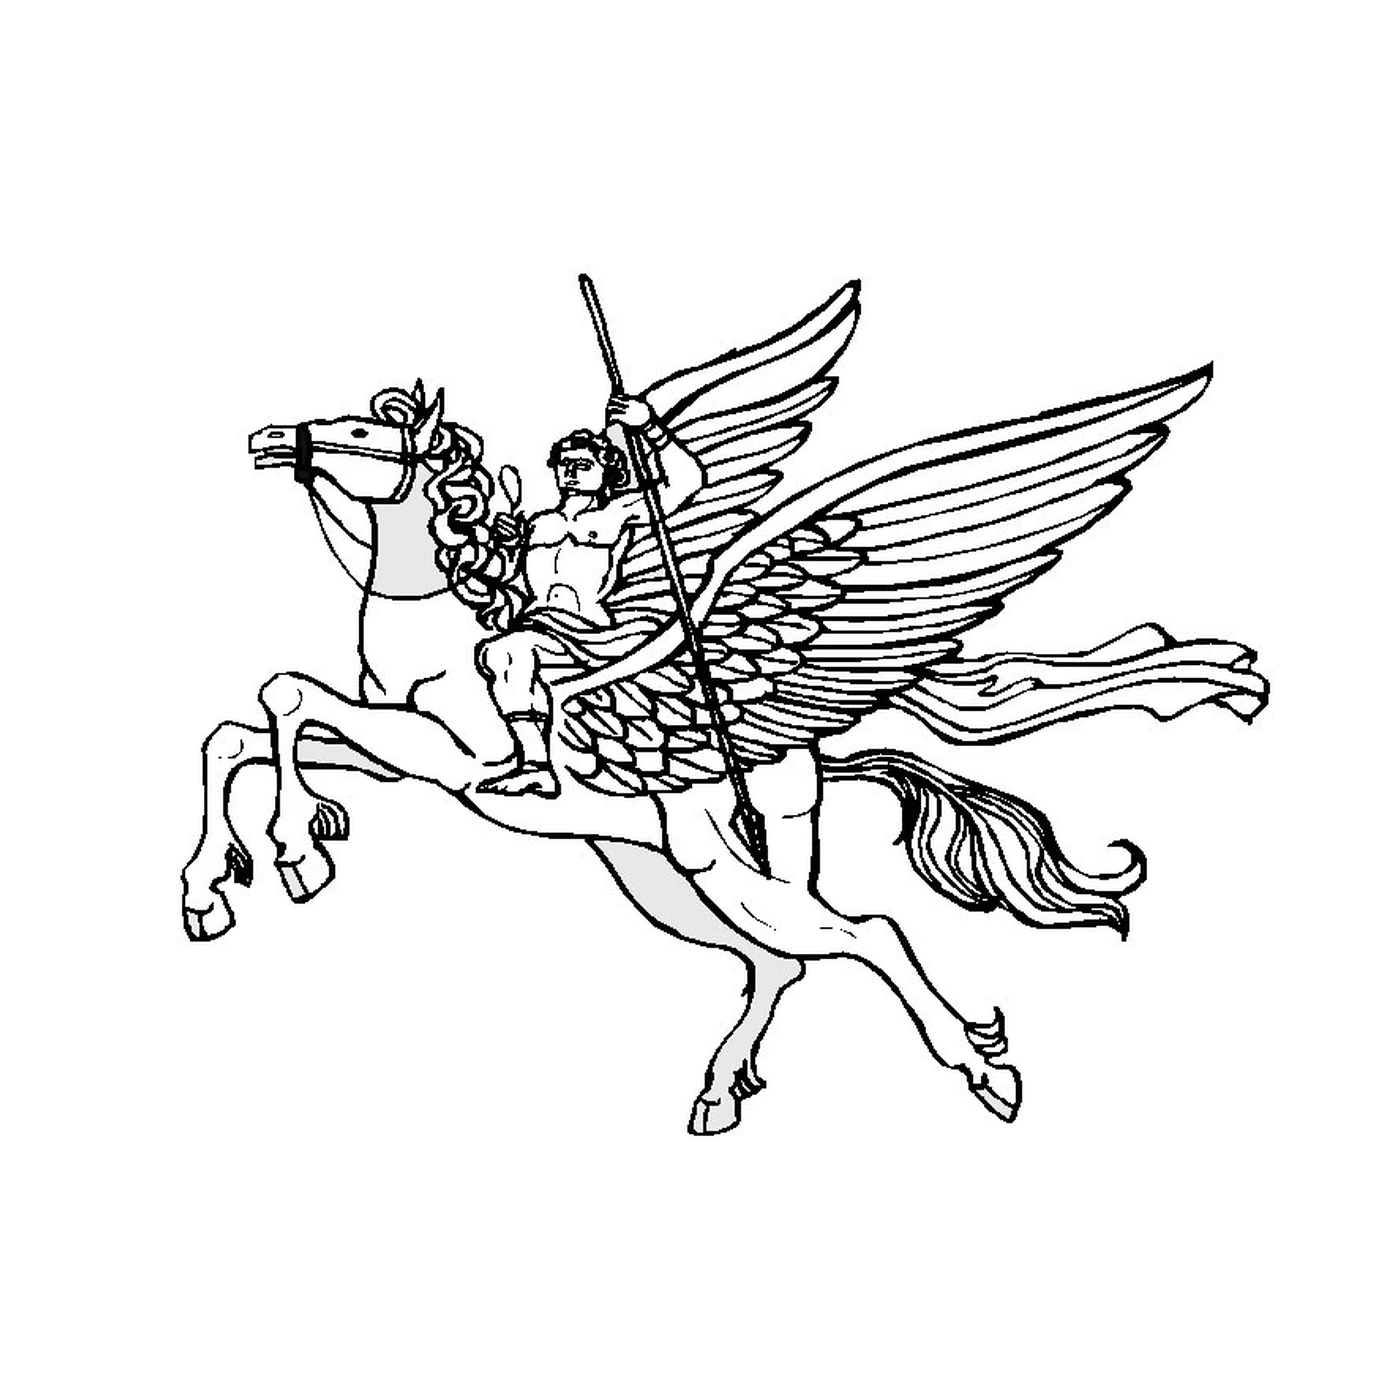  Homem montando um cavalo alado 